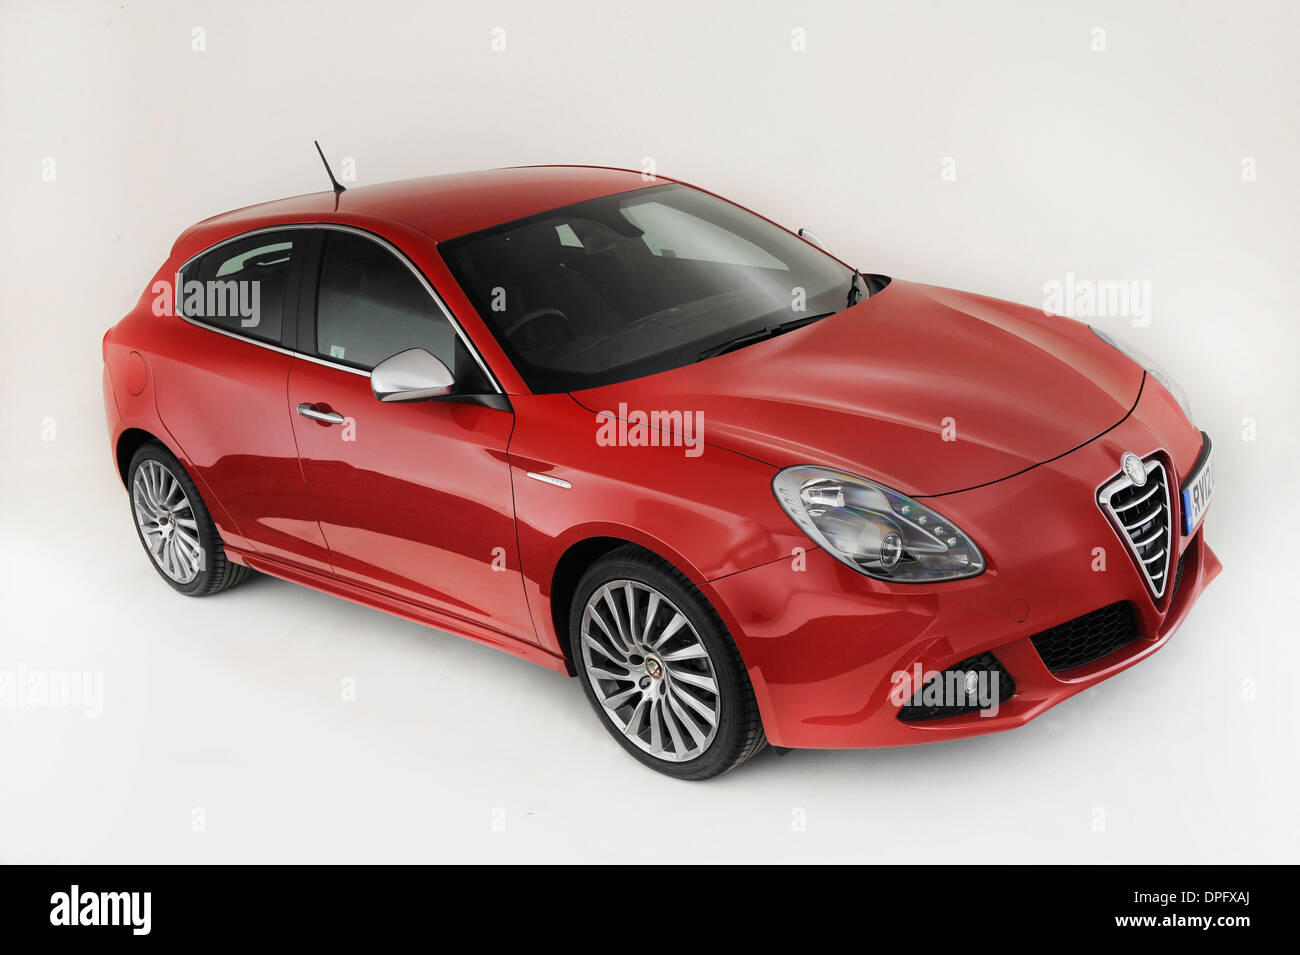 2013 Alfa Romeo Giulietta Banque D'Images